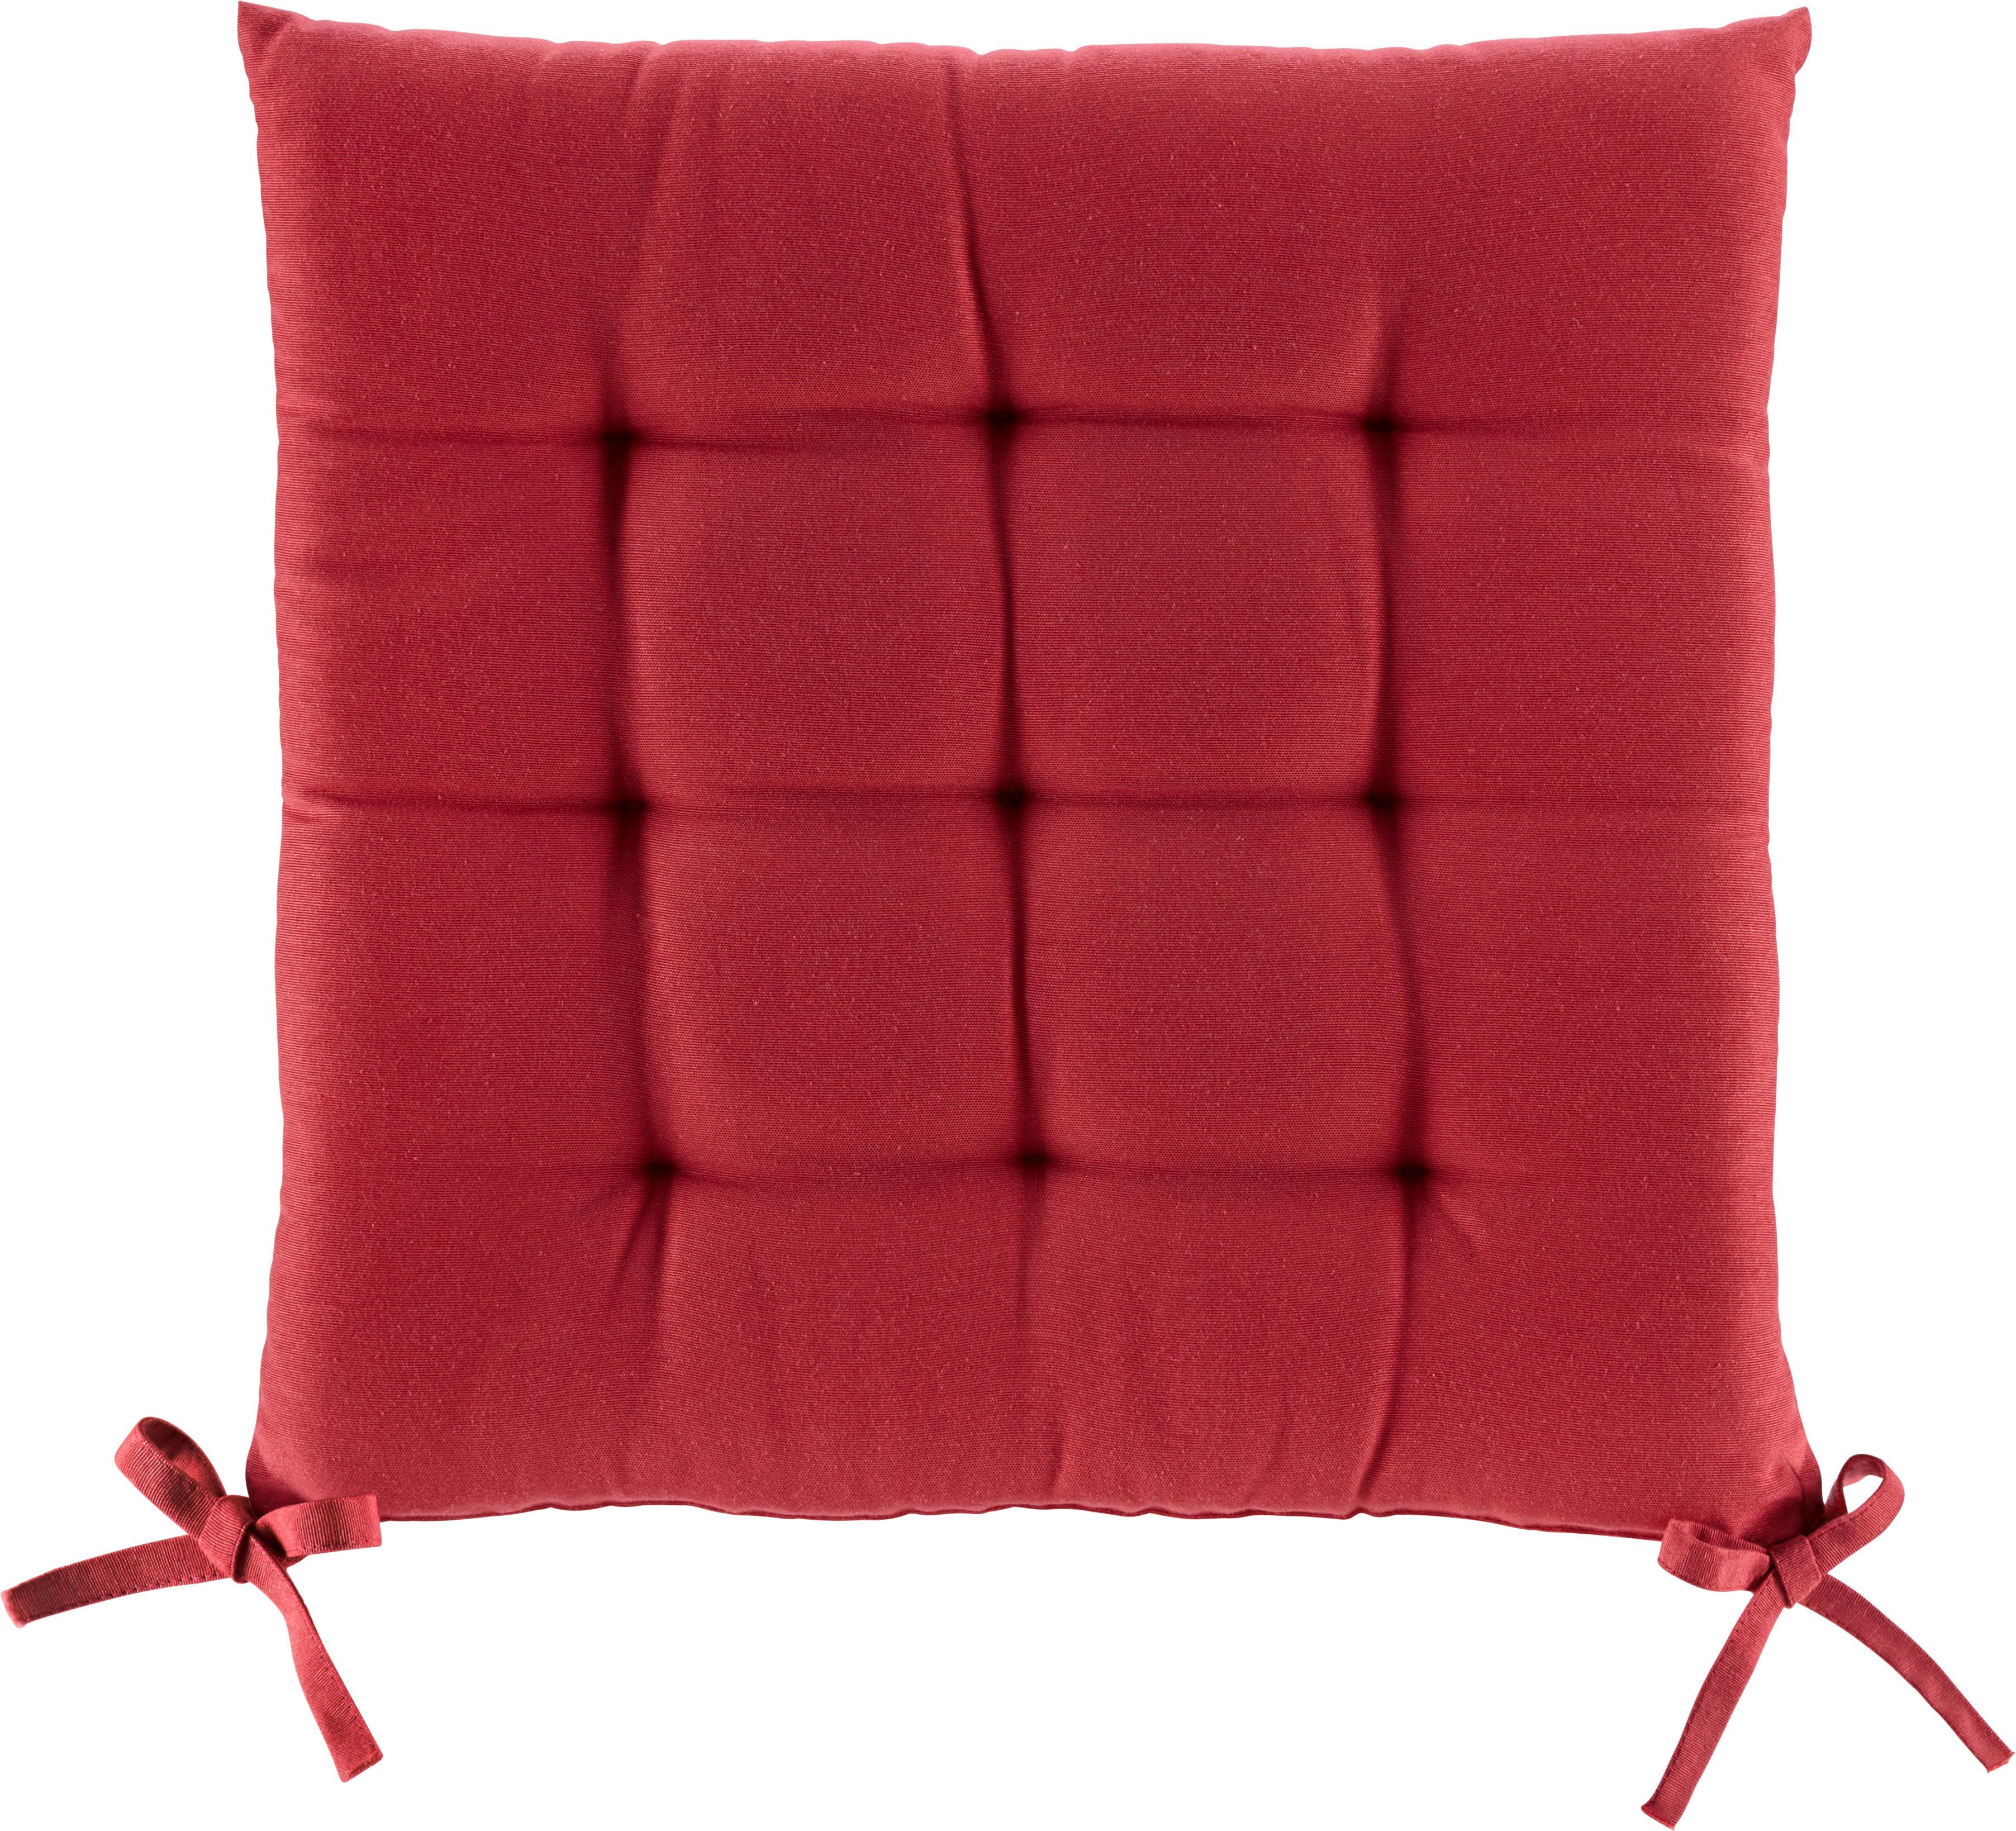 Poduška Na Sedenie Anita, 40/40/4cm, Červená - červená, textil (40/40/4cm) - Modern Living